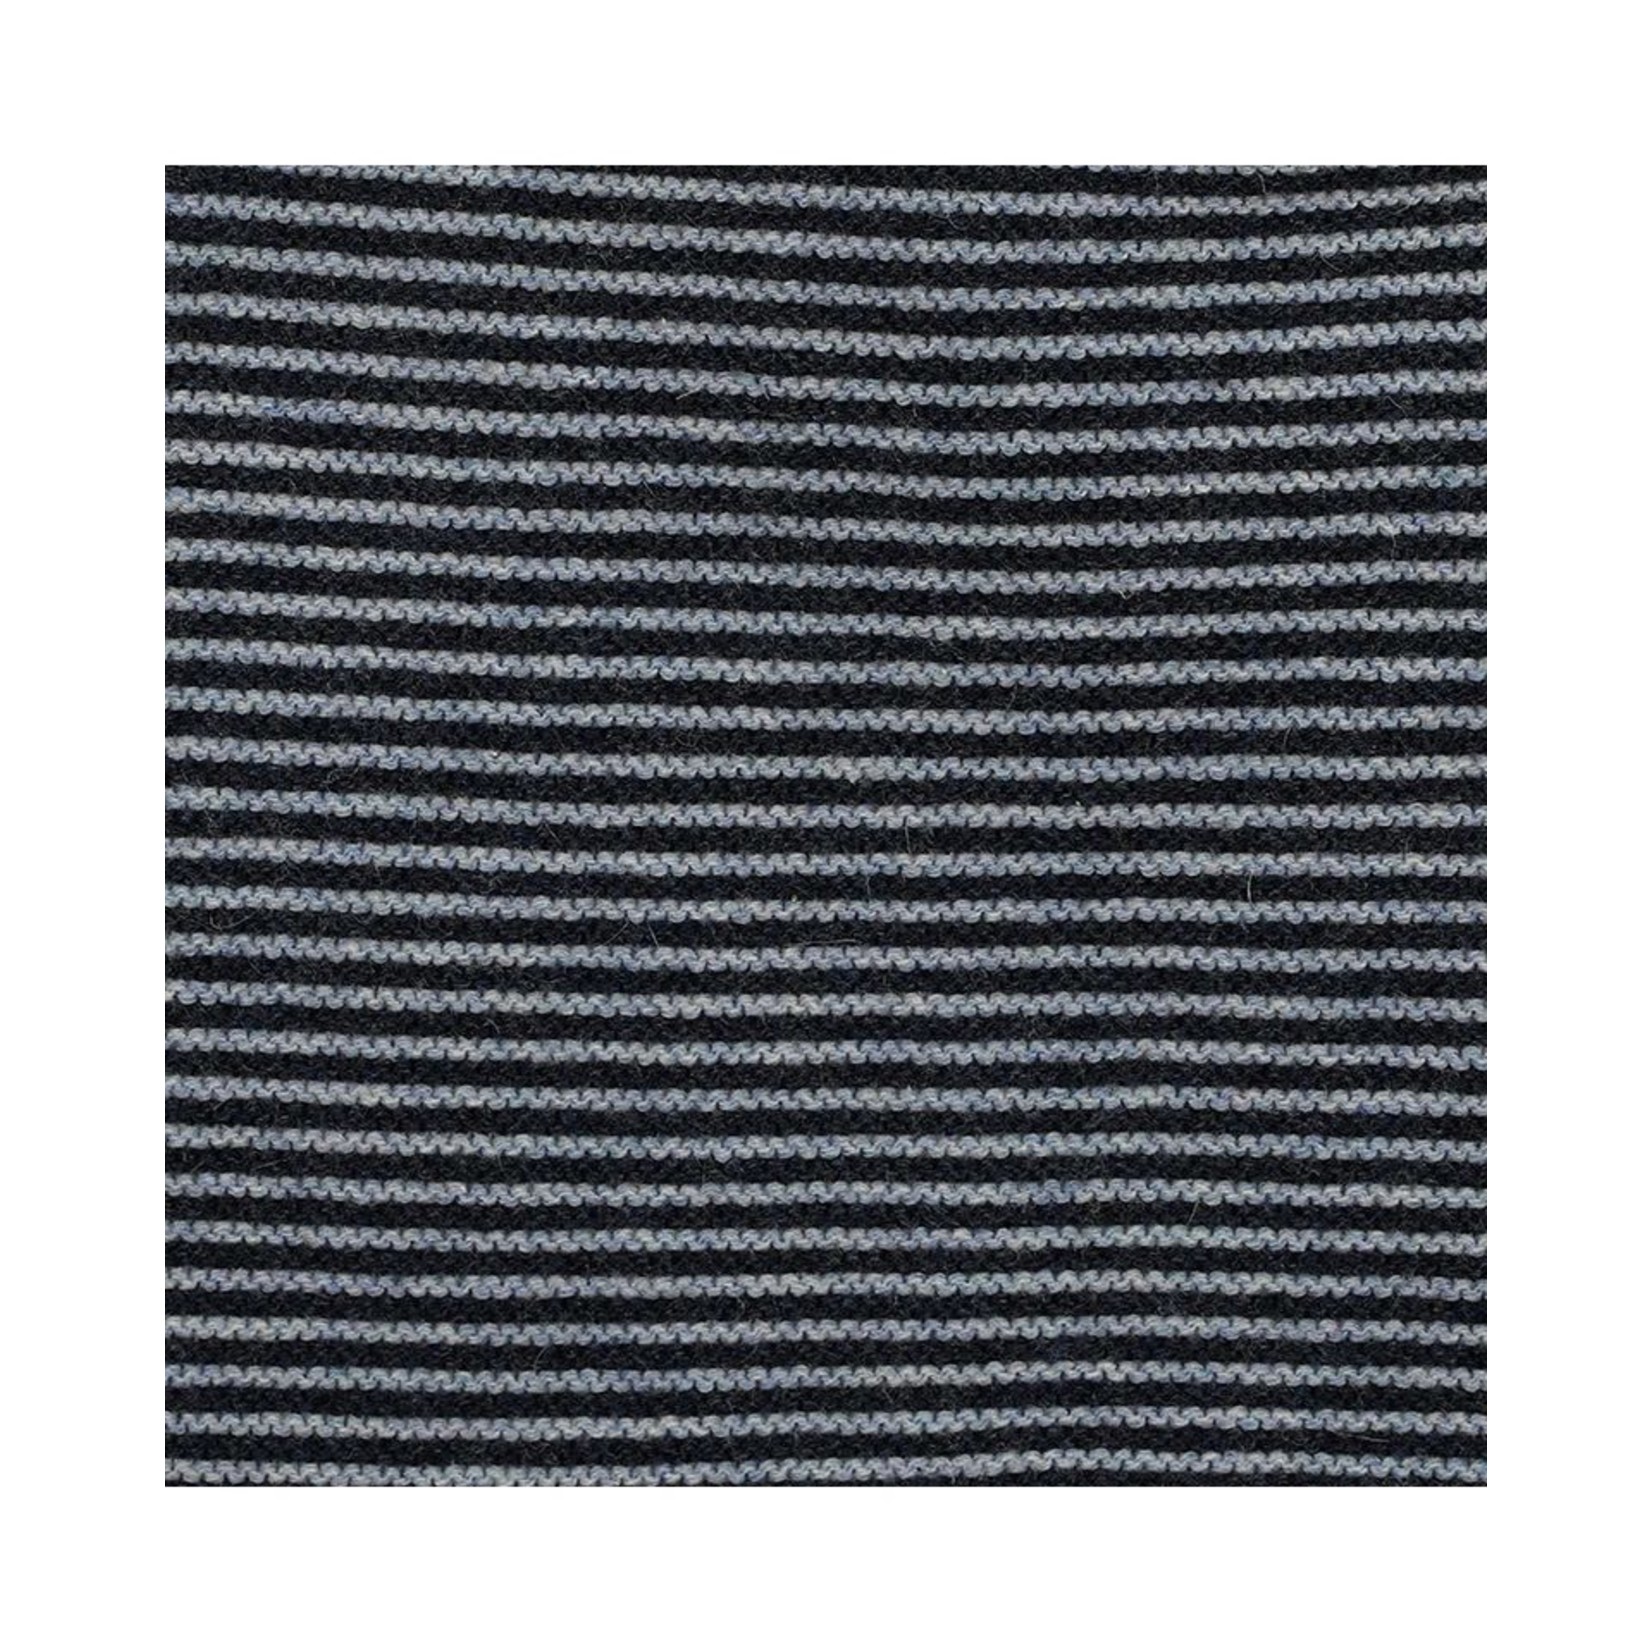 Bebe Blue Stripe Knit Pants